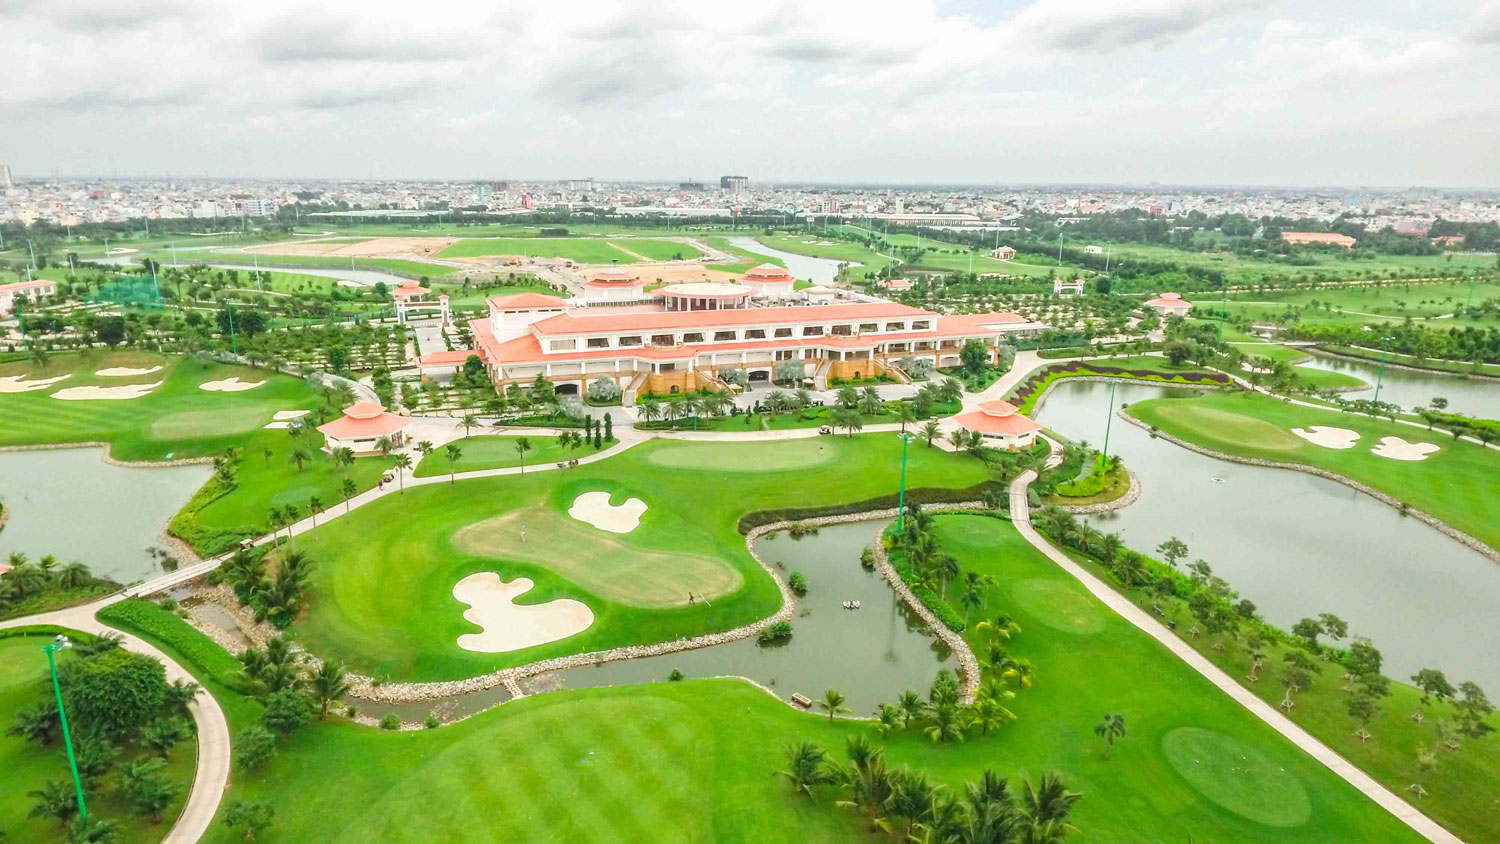 Sân golf Long Biên - Điểm đến golf nổi bật của Thành phố Hà Nội